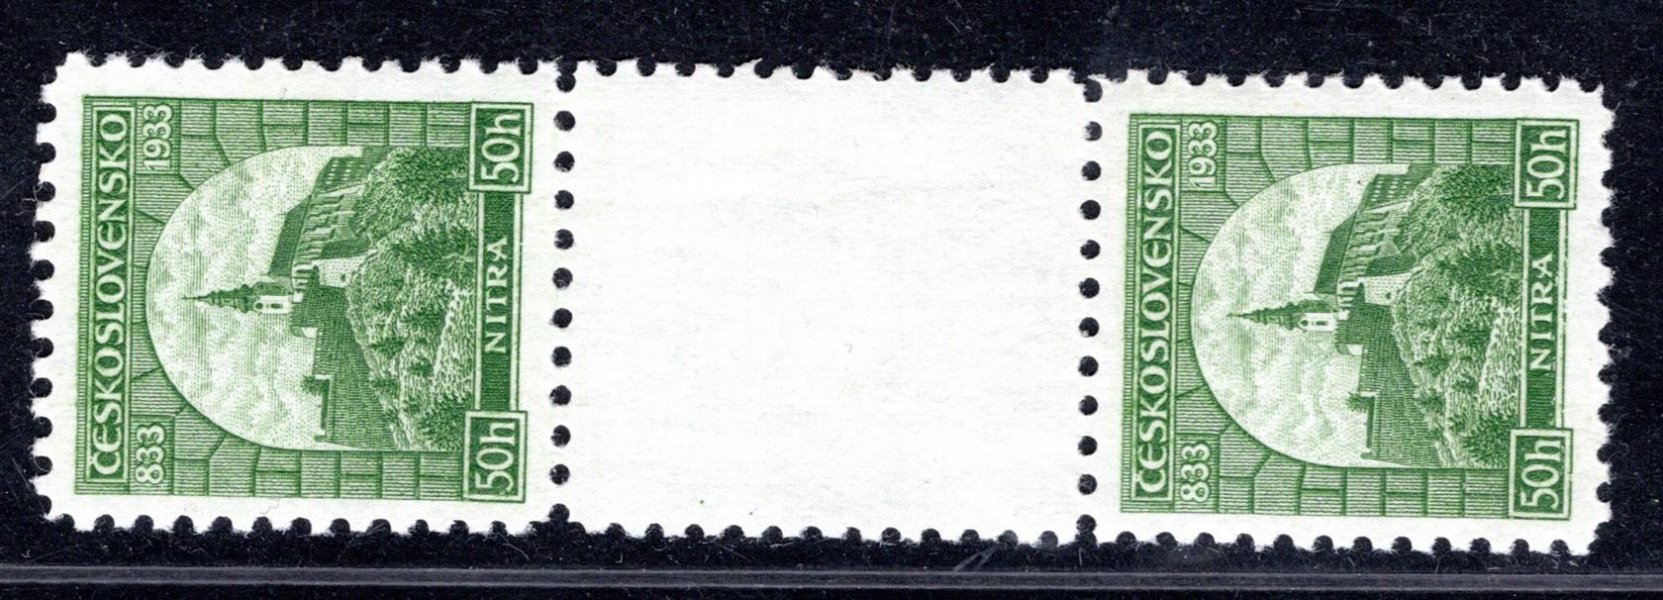 273 Ms, Nitra, stejnosměrné, 2 známkové meziarší, zelená 50 h,vynechávka lepu -  sign, Stach